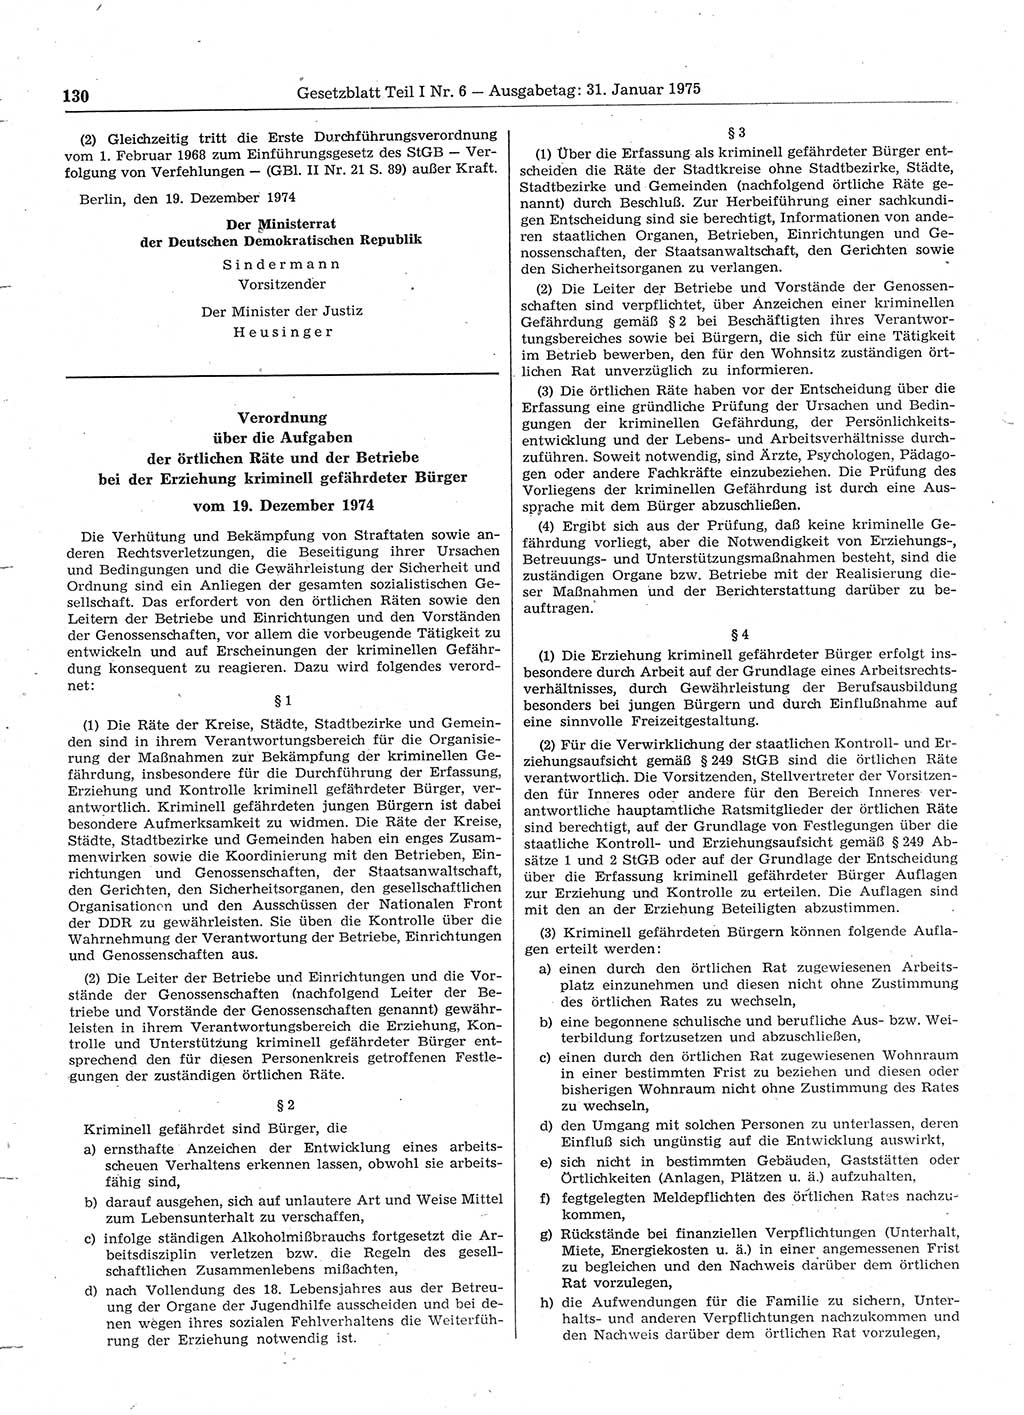 Gesetzblatt (GBl.) der Deutschen Demokratischen Republik (DDR) Teil Ⅰ 1975, Seite 130 (GBl. DDR Ⅰ 1975, S. 130)